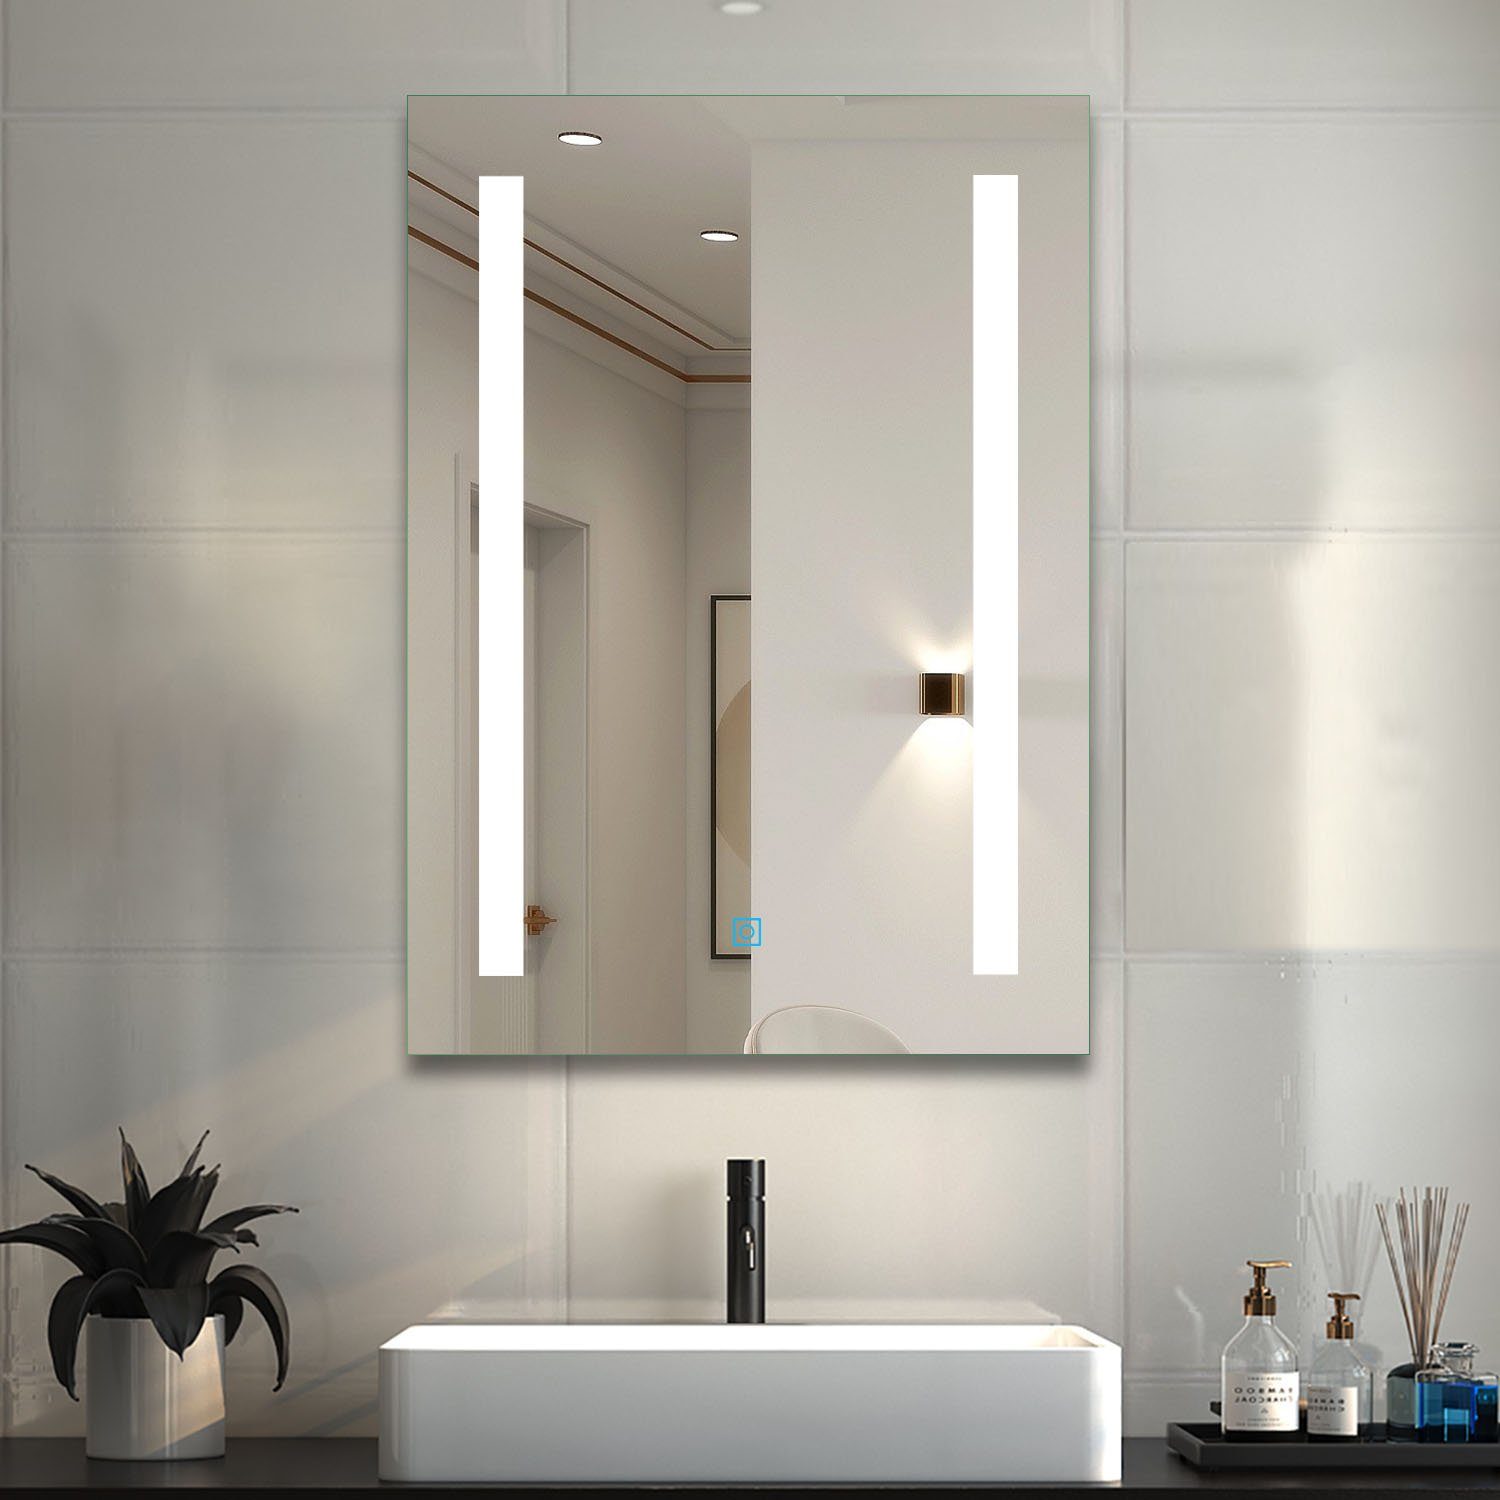 Touch-Schalter duschspa Beleuchtung Kaltweiß mit LED cm, Beschlagfrei 45-80 Badspiegel